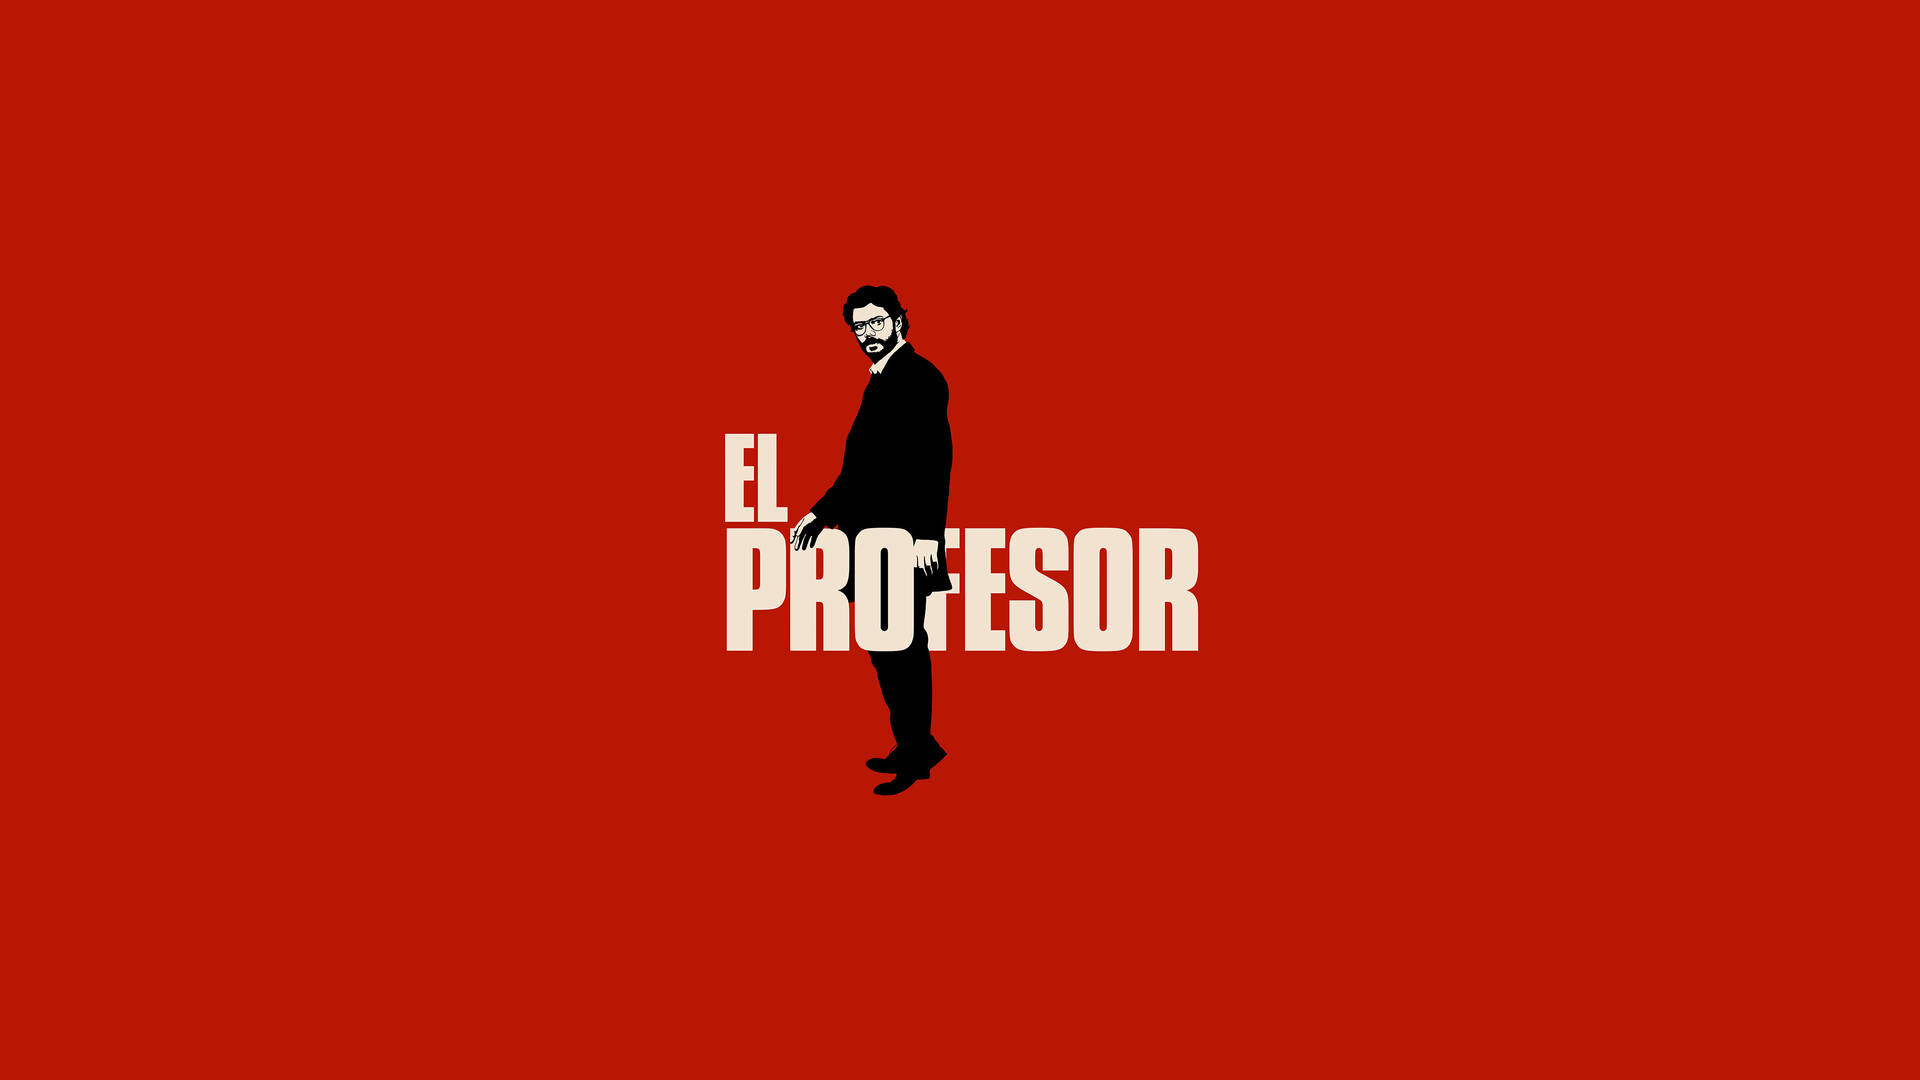 The Professor Money Heist Poster